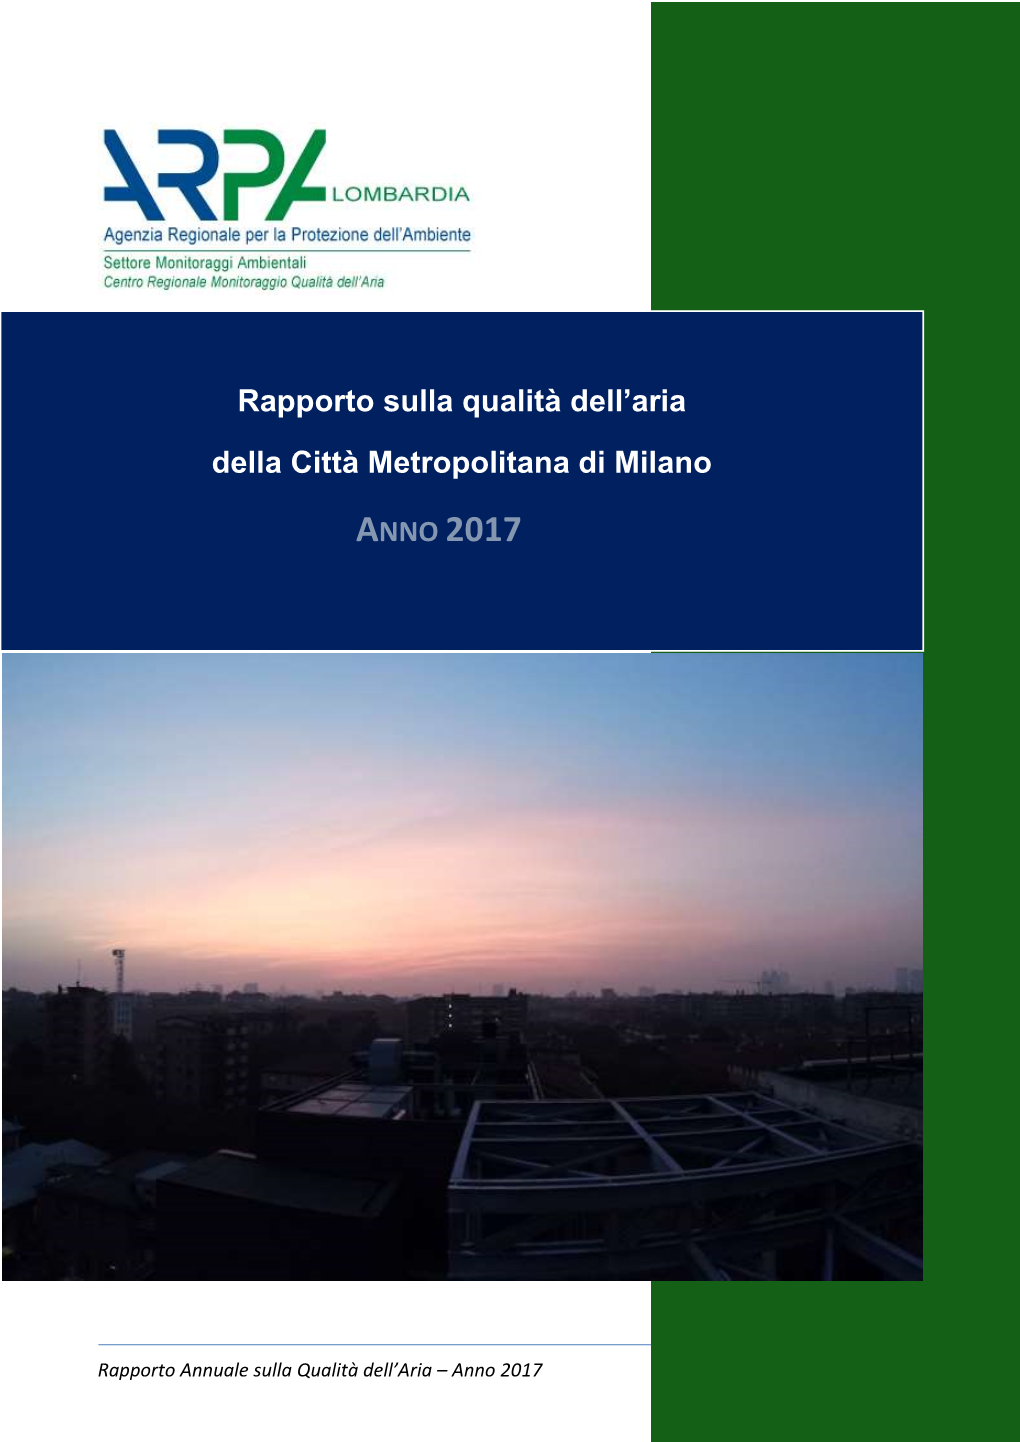 Rapporto Annuale Sulla Qualità Dell'aria